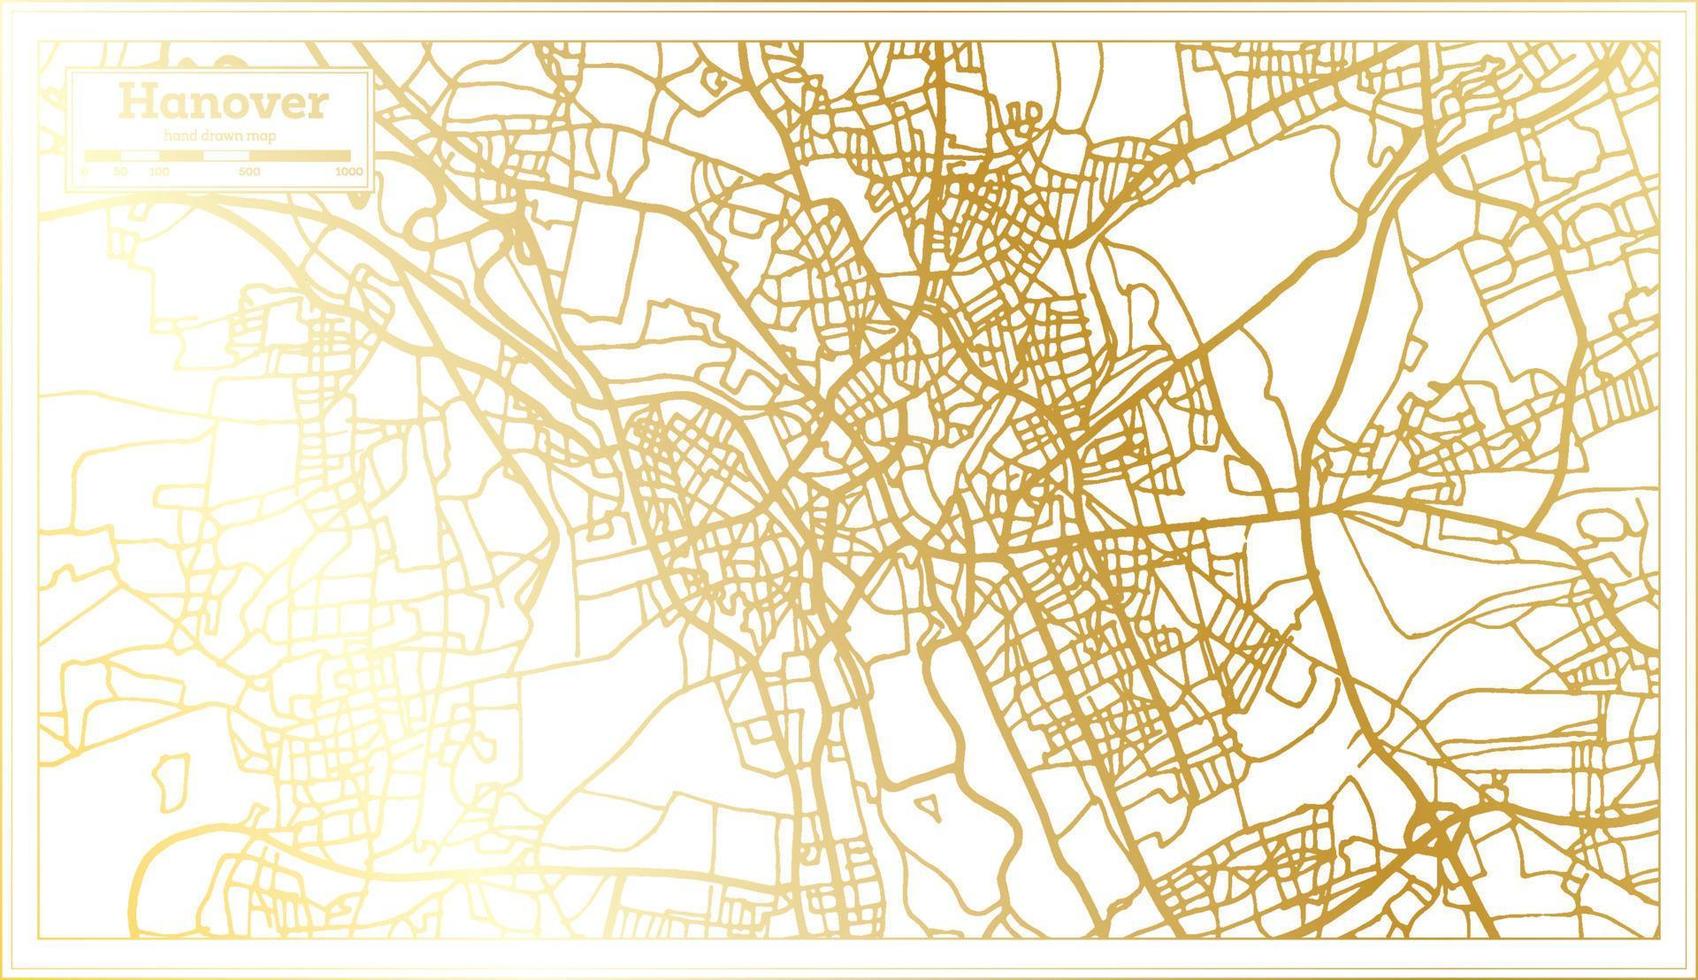 plan de la ville de hanovre allemagne dans un style rétro de couleur dorée. carte muette. vecteur